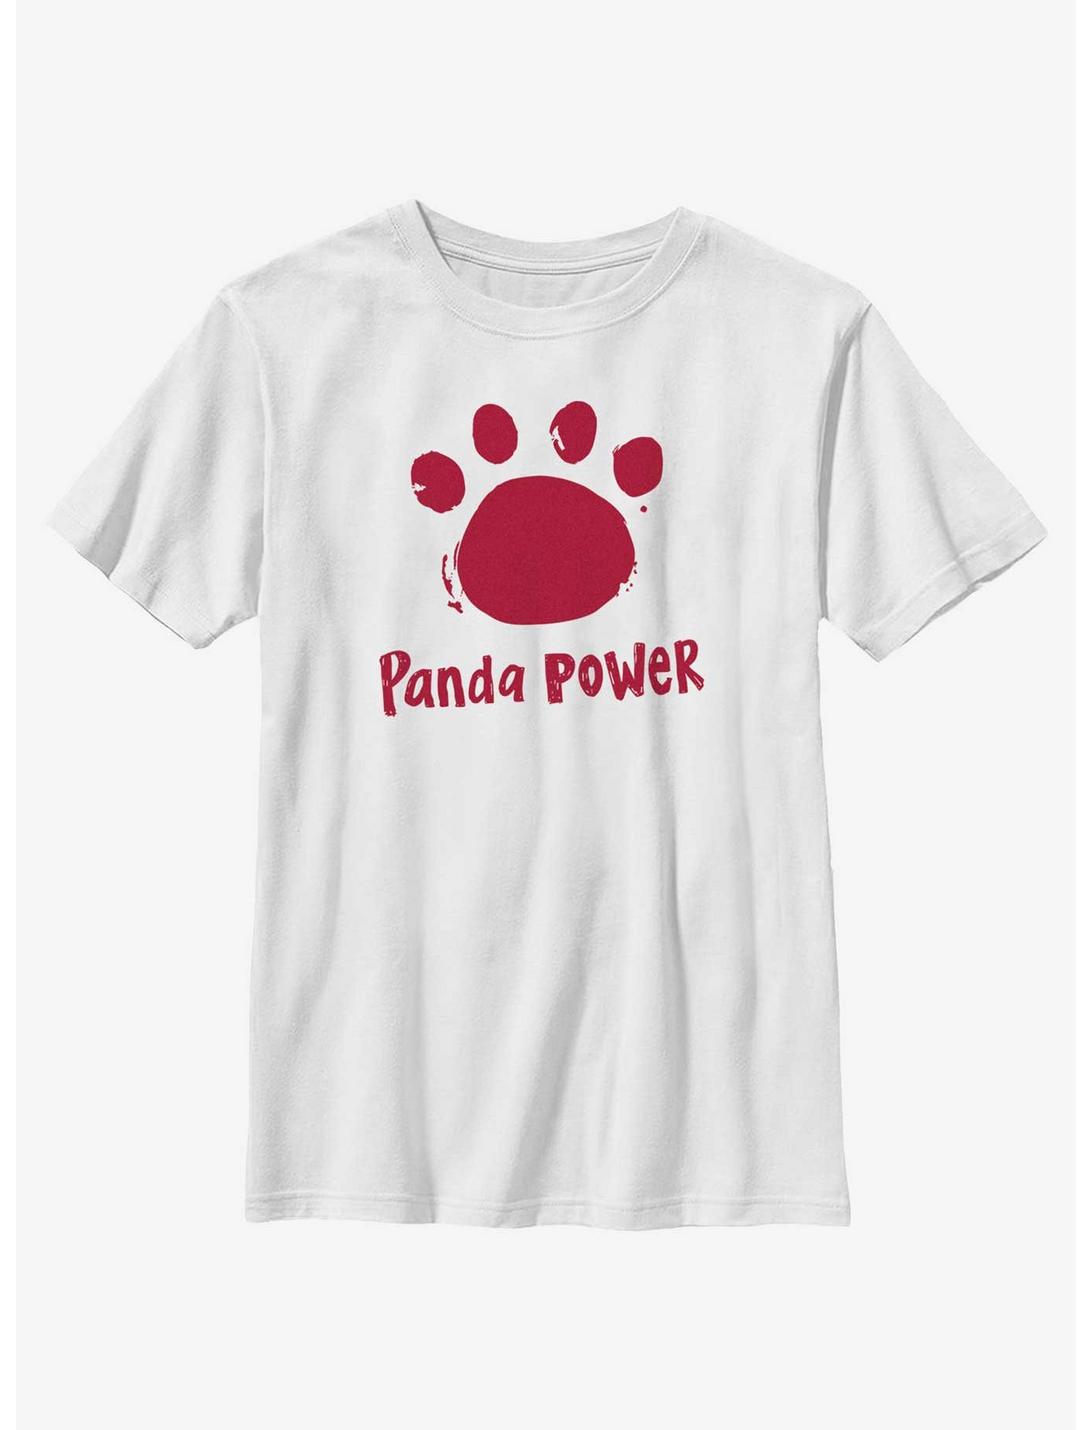 Disney Pixar Turning Red Panda Power Logo Youth T-Shirt, WHITE, hi-res